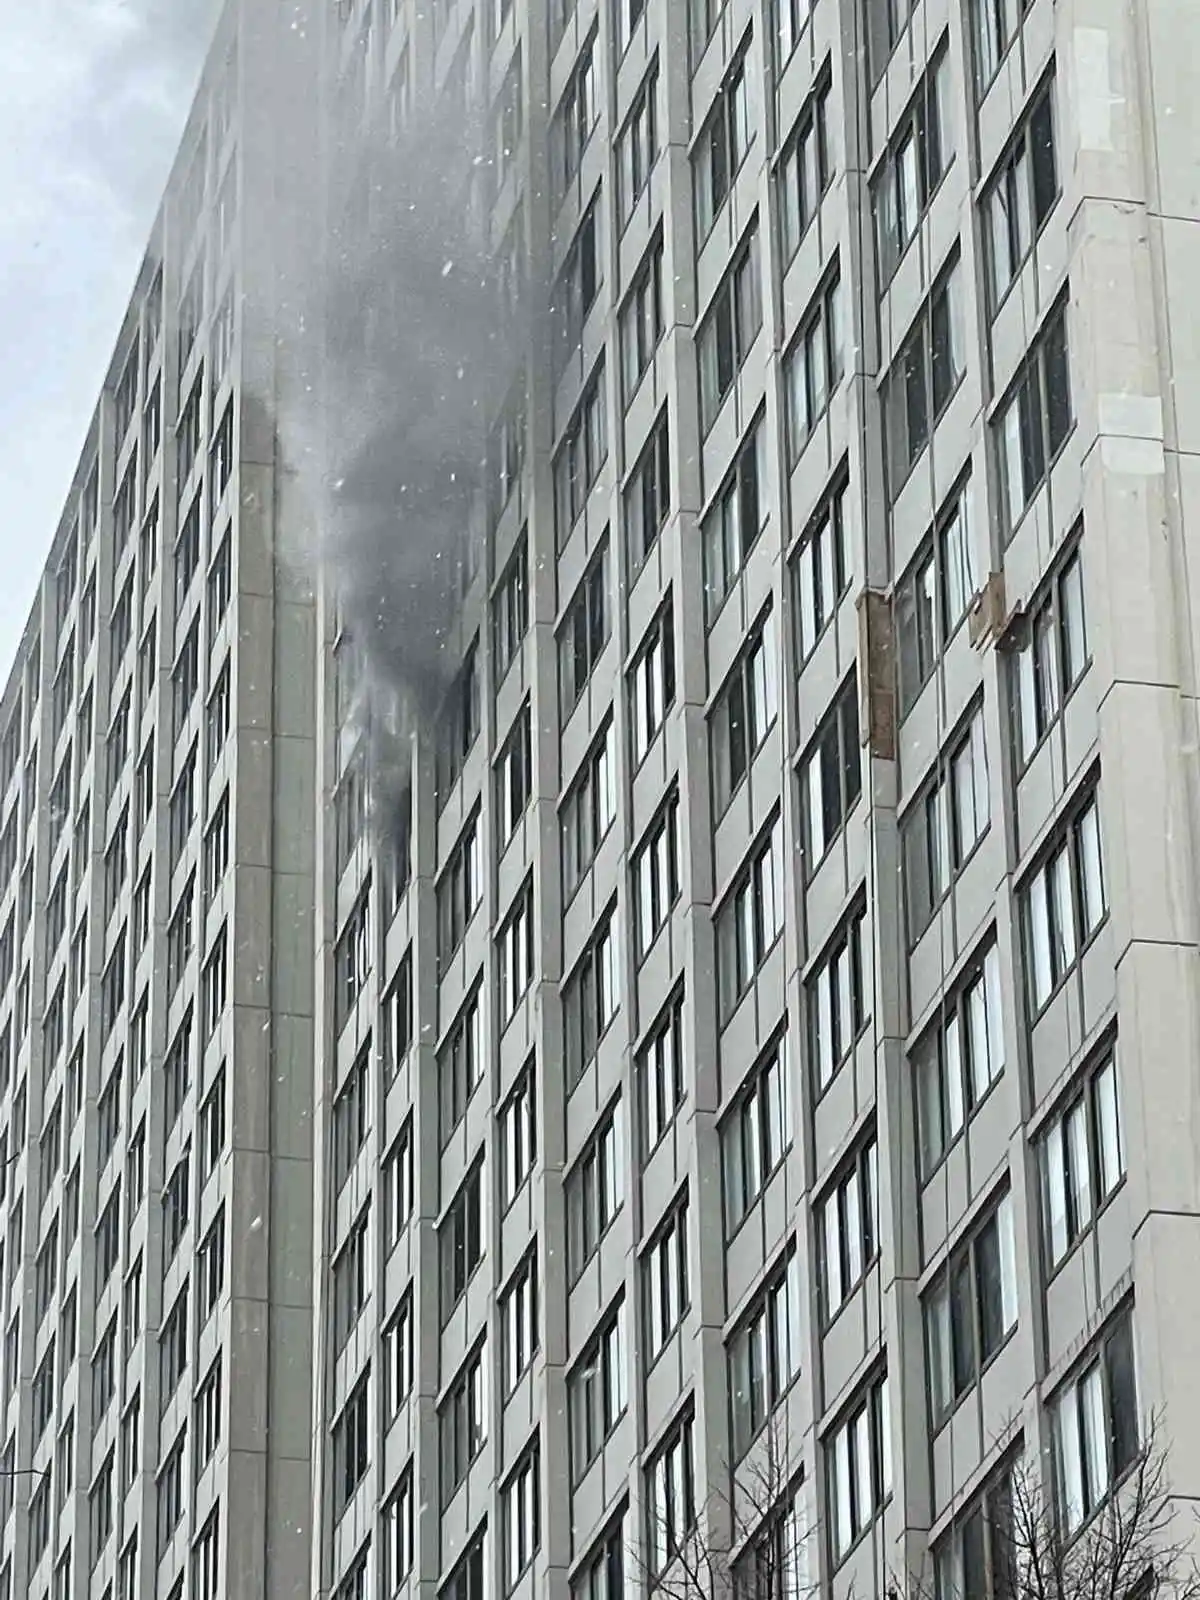 ABD’de 25 katlı binada yangın: 1 ölü, 8 yaralı
